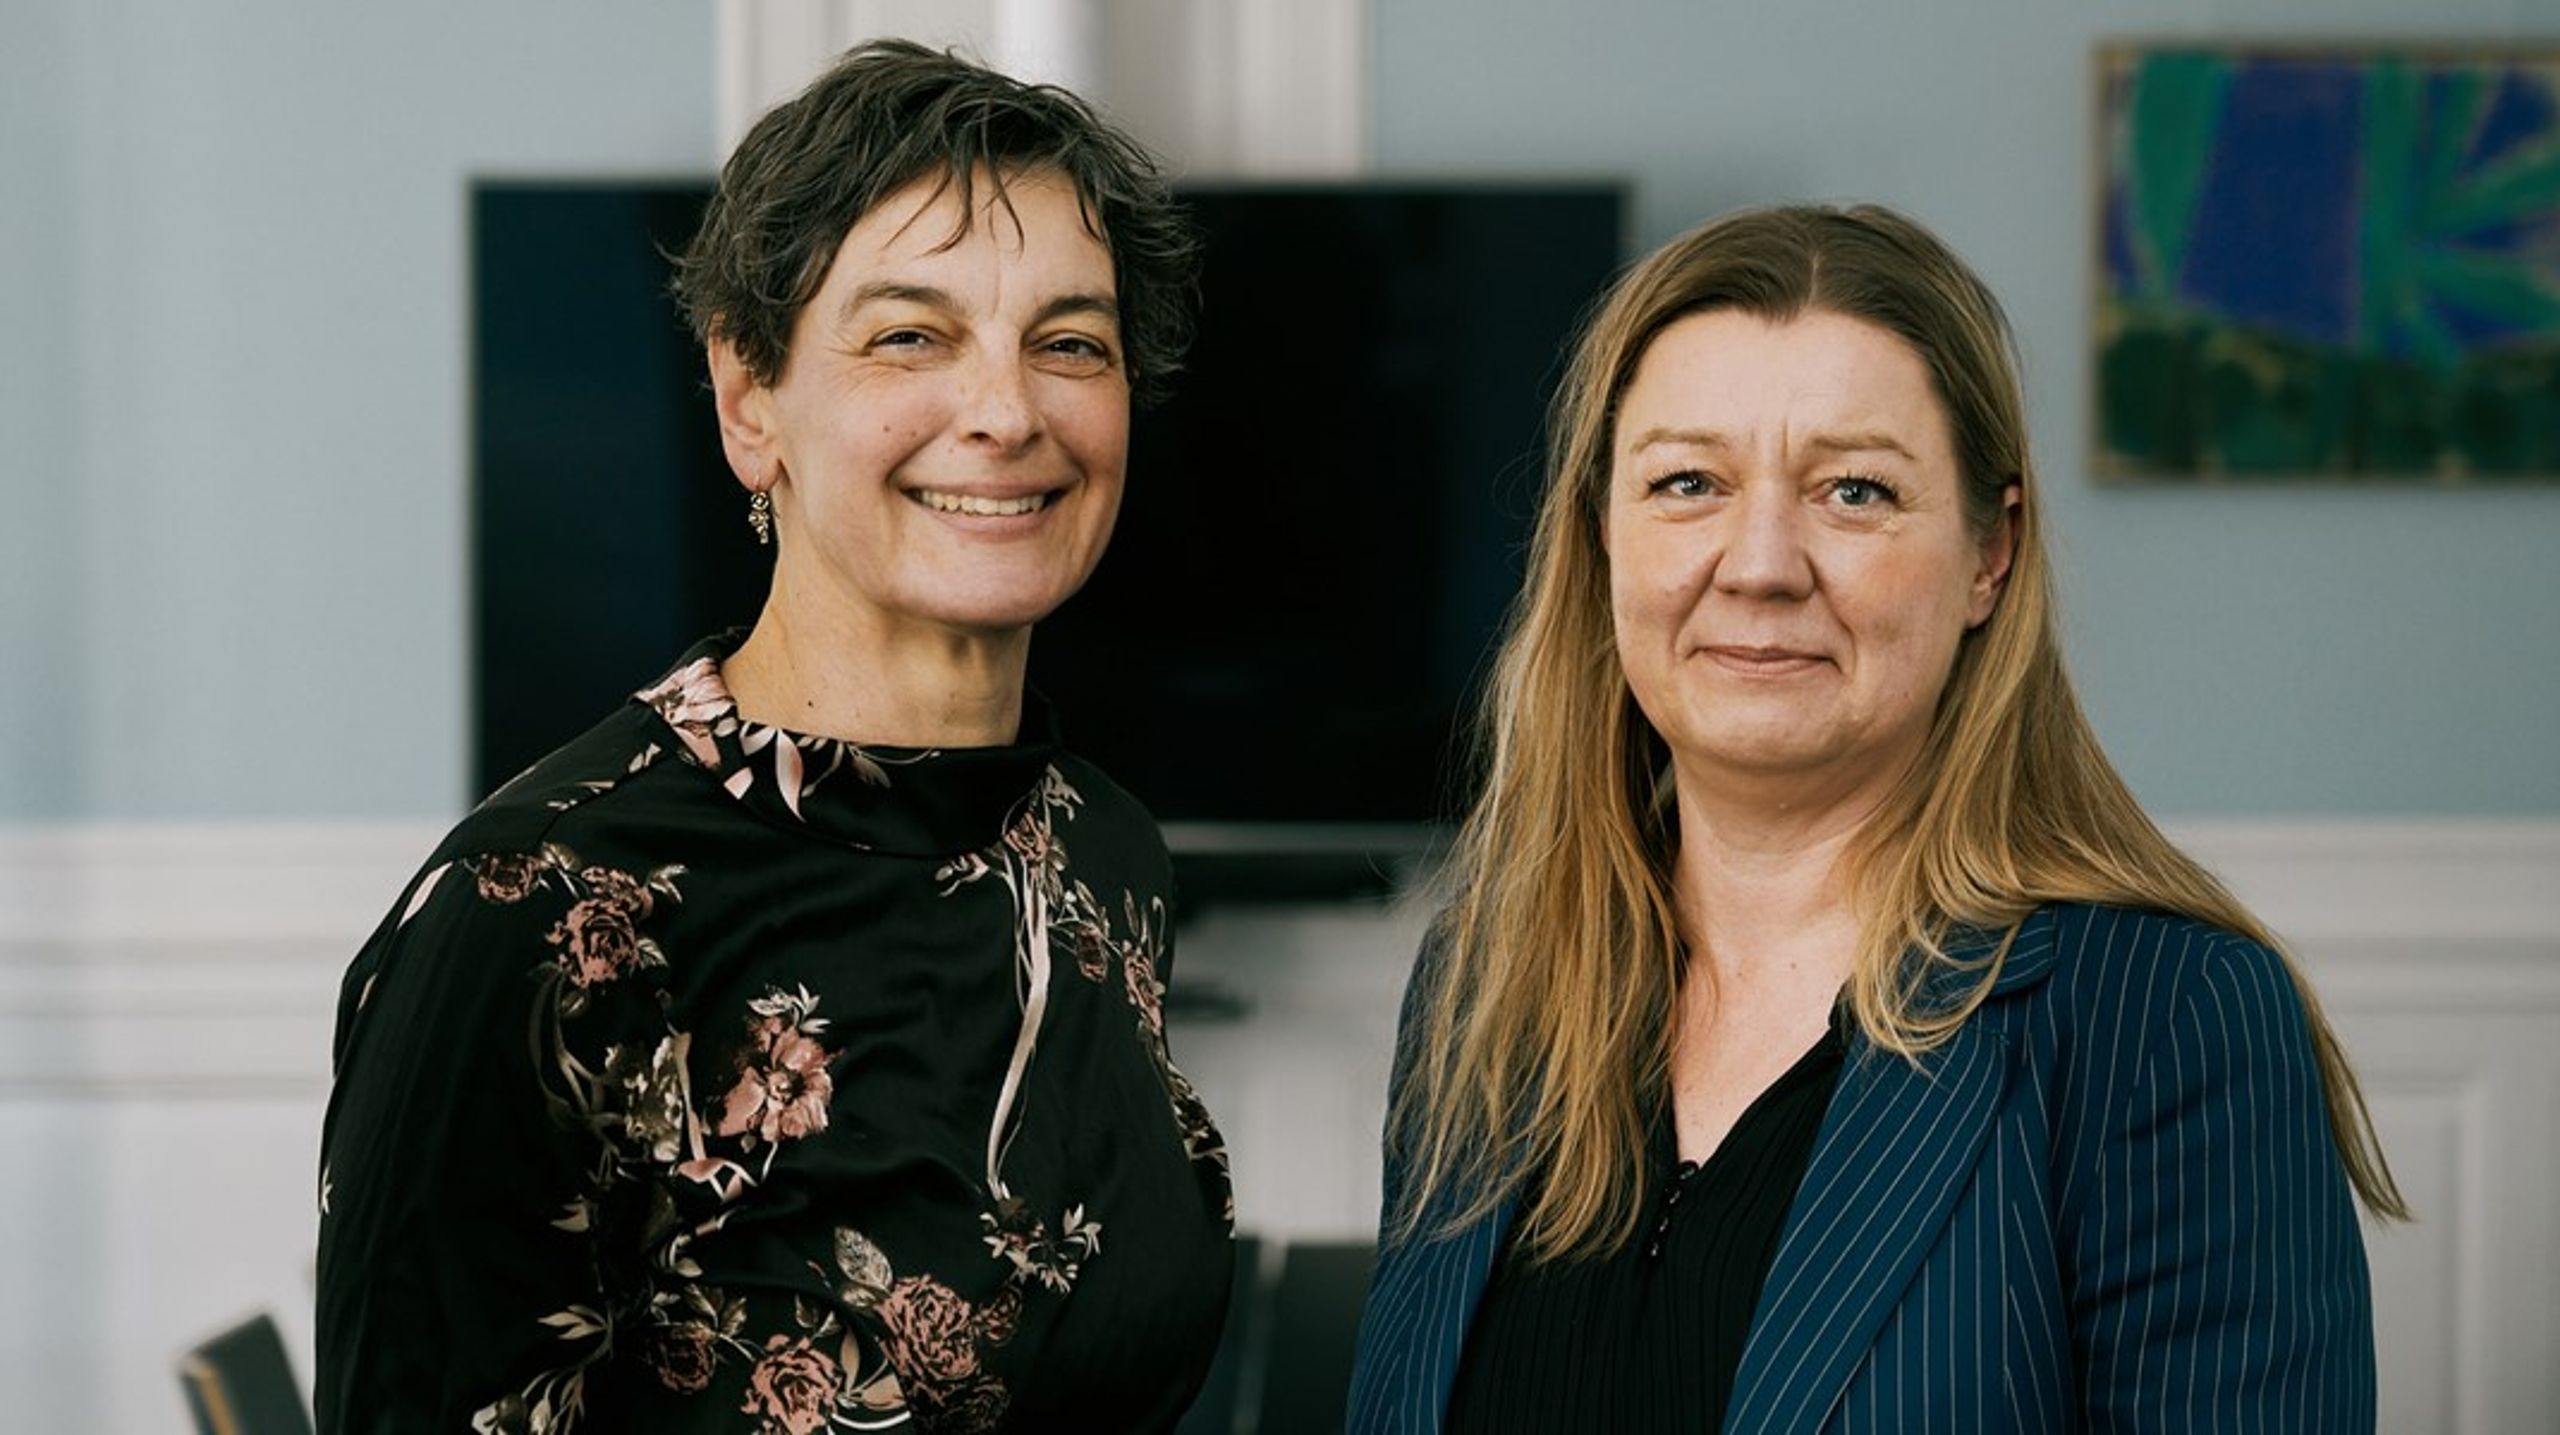 Sara Vergo og Tine Johansen har som formænd for henholdsvis Djøf og Dansk Journalistforbund indgået et samarbejde om et advisory board, der skal afhjælpe tillidskrisen mellem embedsfolk og journalister.&nbsp;